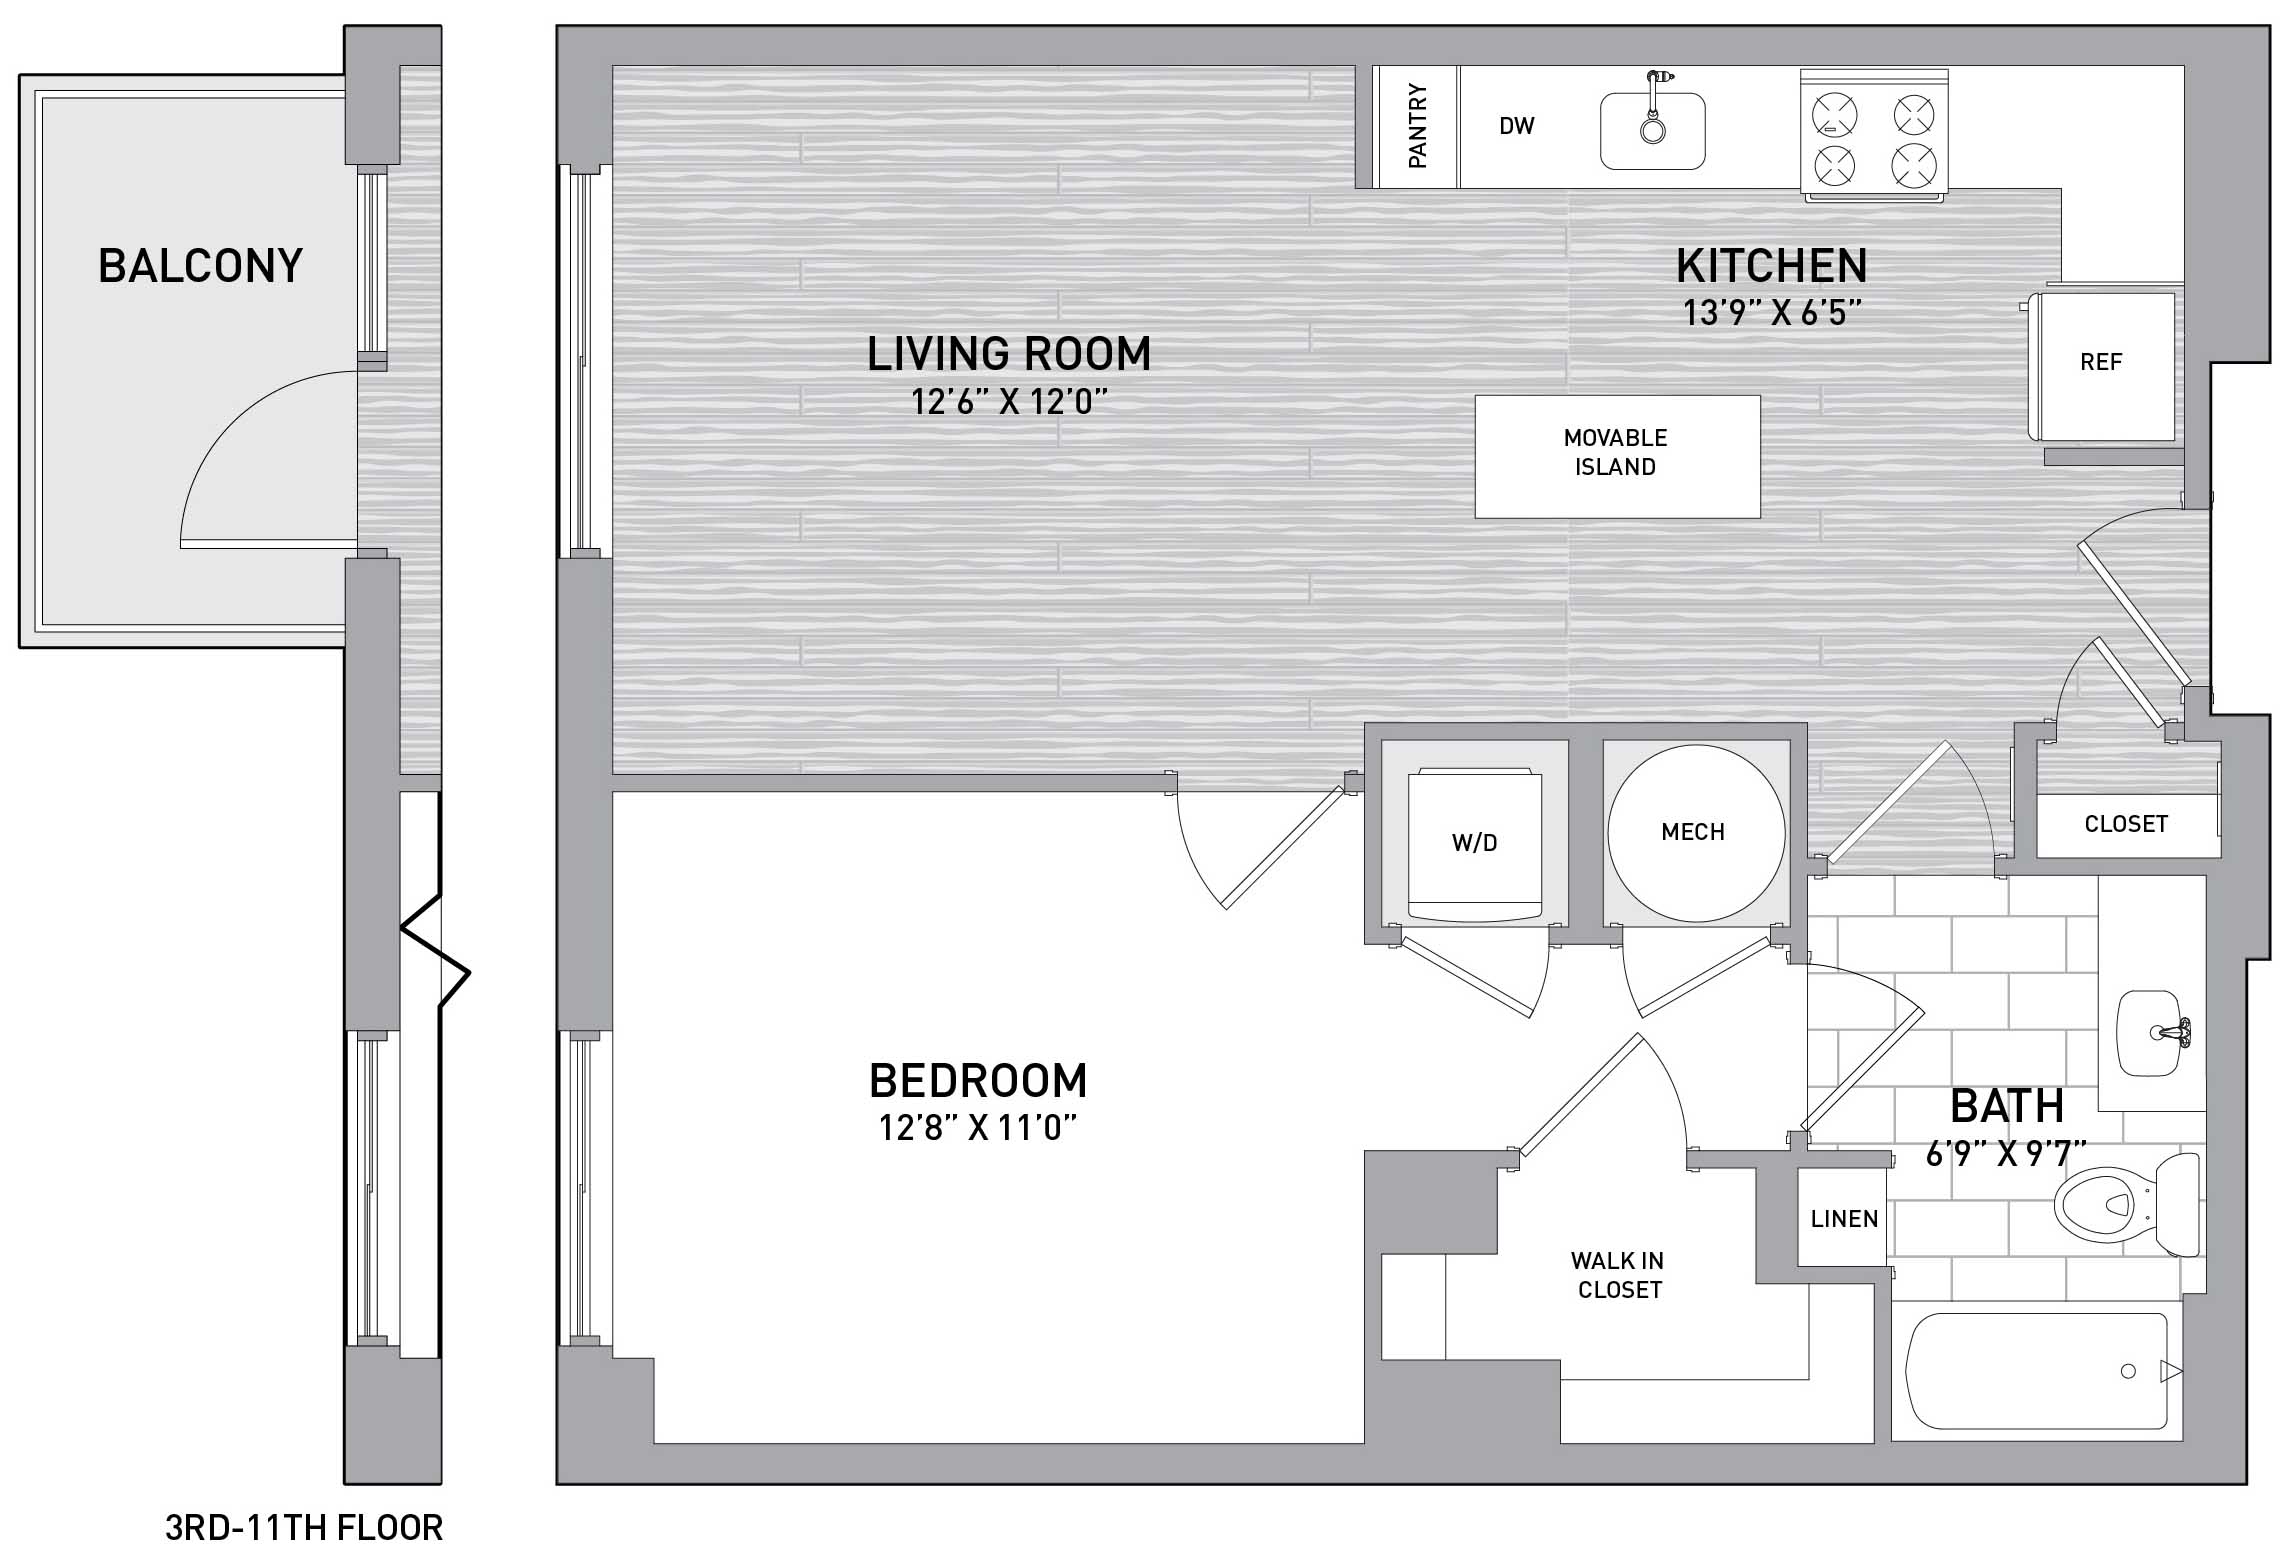 Floorplan Image of unit 151-0205